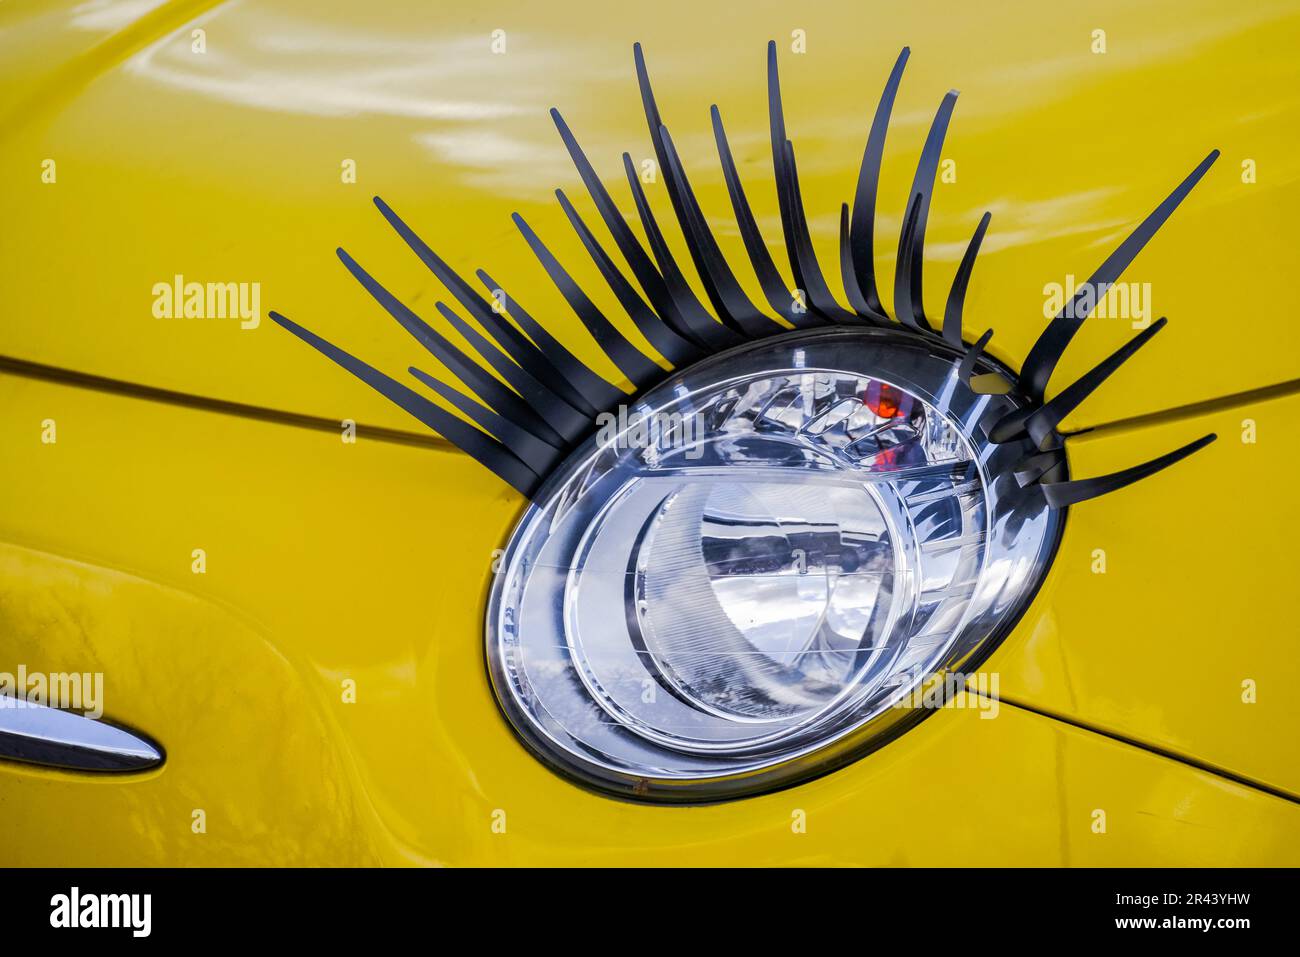 Hell gefärbt Auto, bemalt mit großen Lippen und Wimpern, Las Vegas, Nevada,  USA Stockfotografie - Alamy